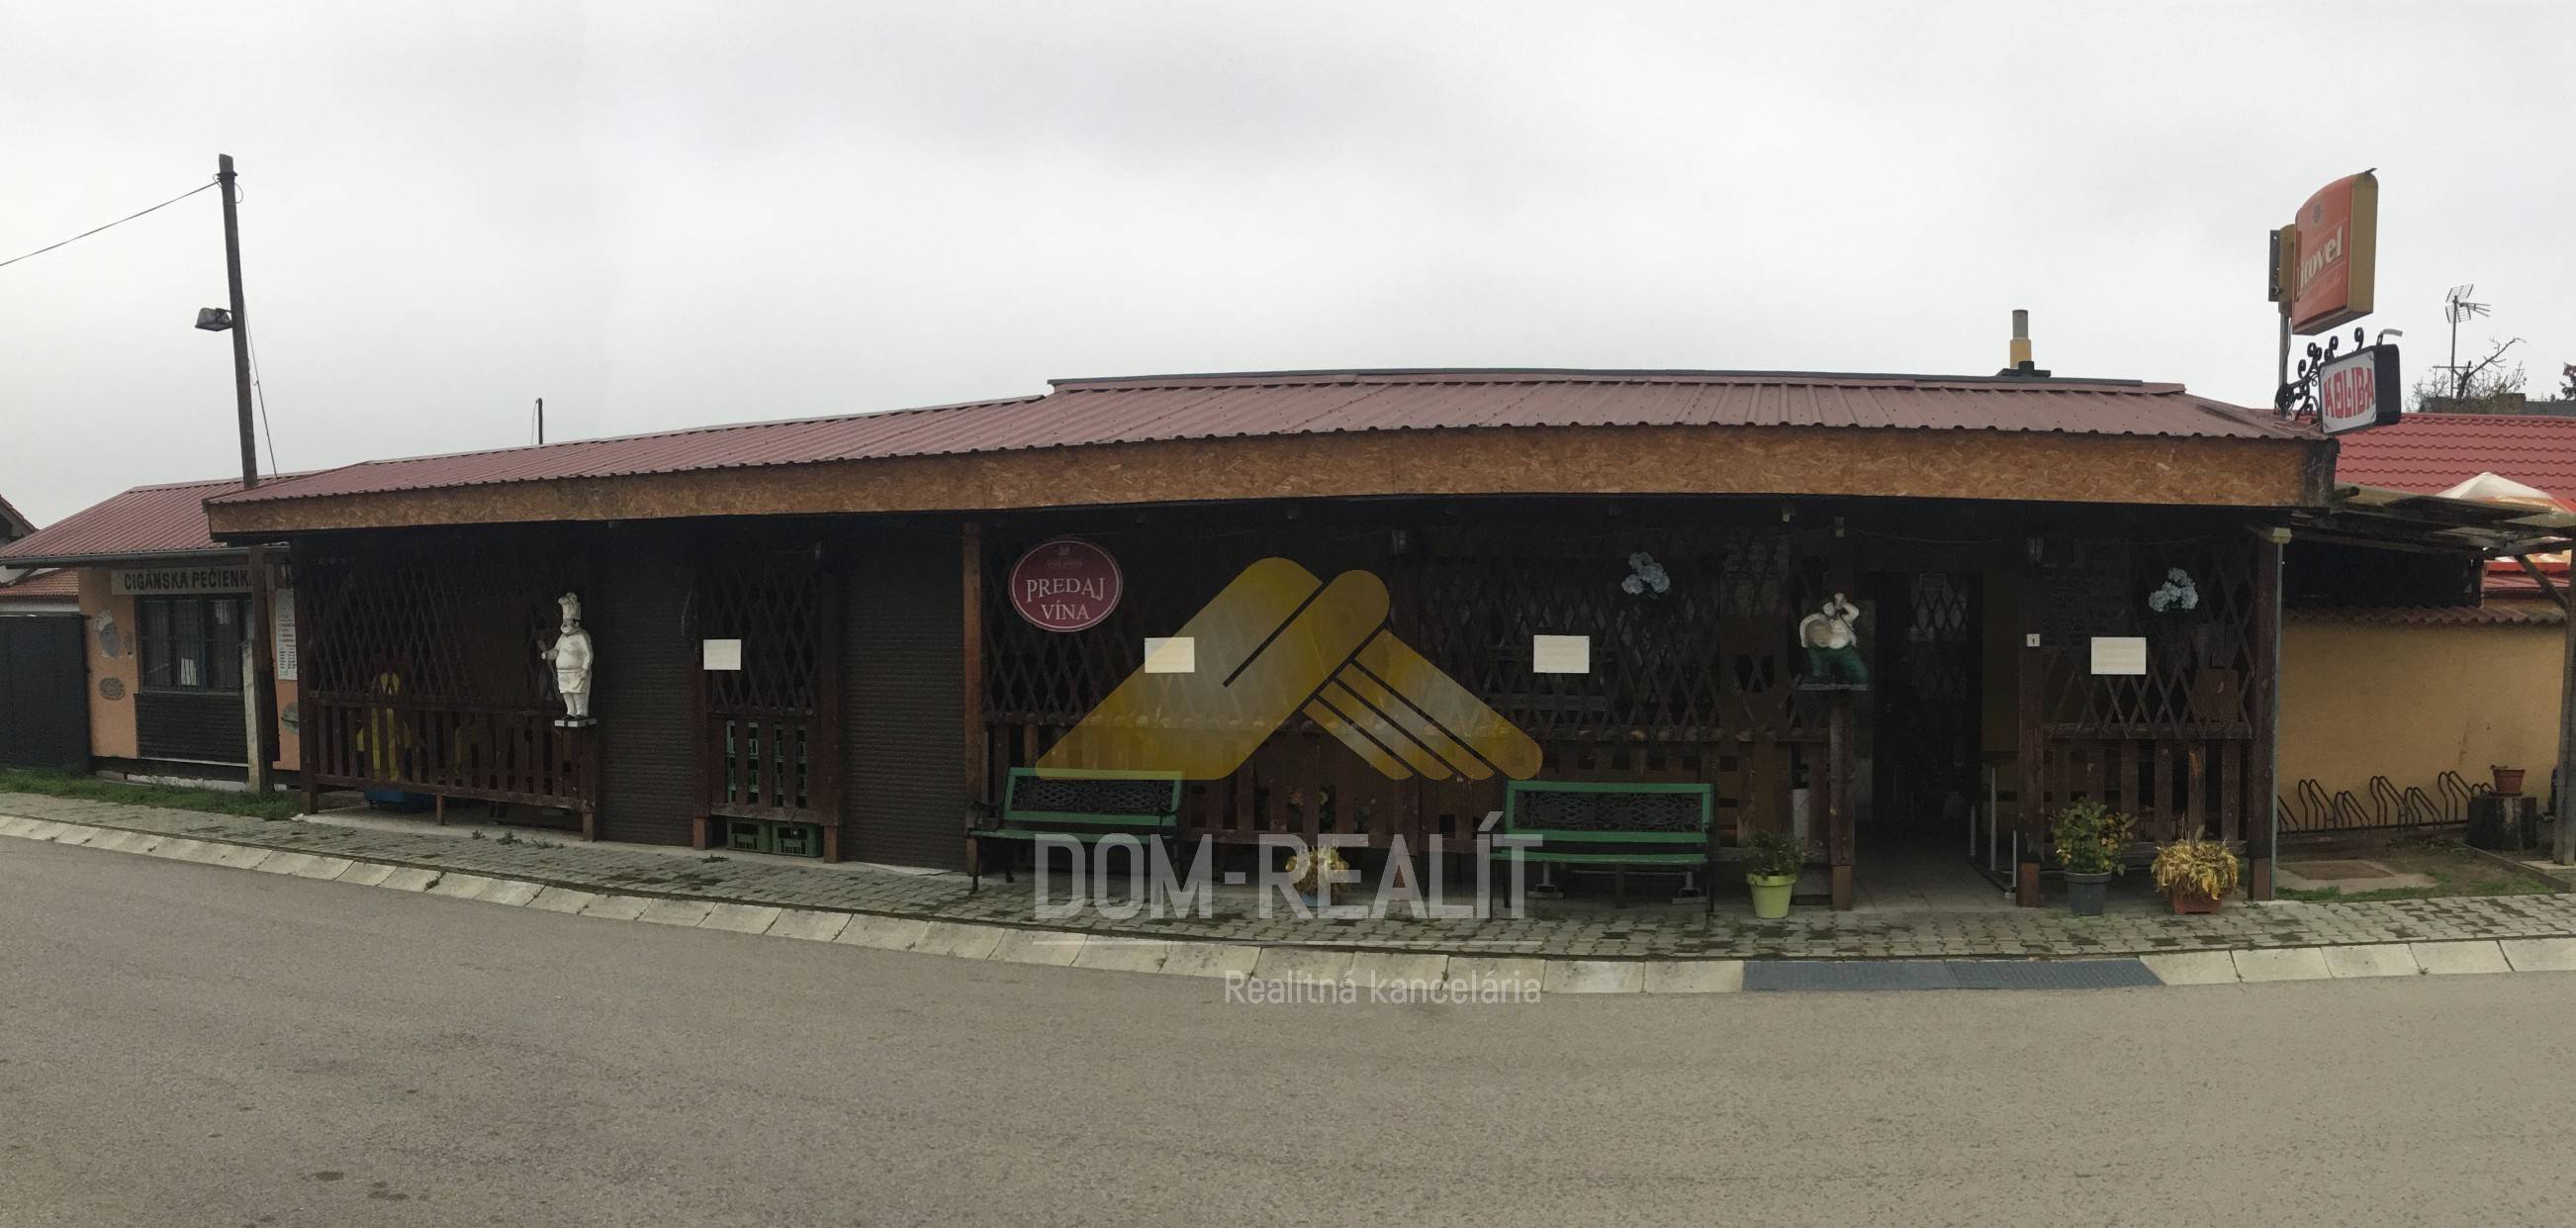 Nehnutelnost DOM-REALÍT ponúka na predaj hostinec v Plaveckom Štvrtku